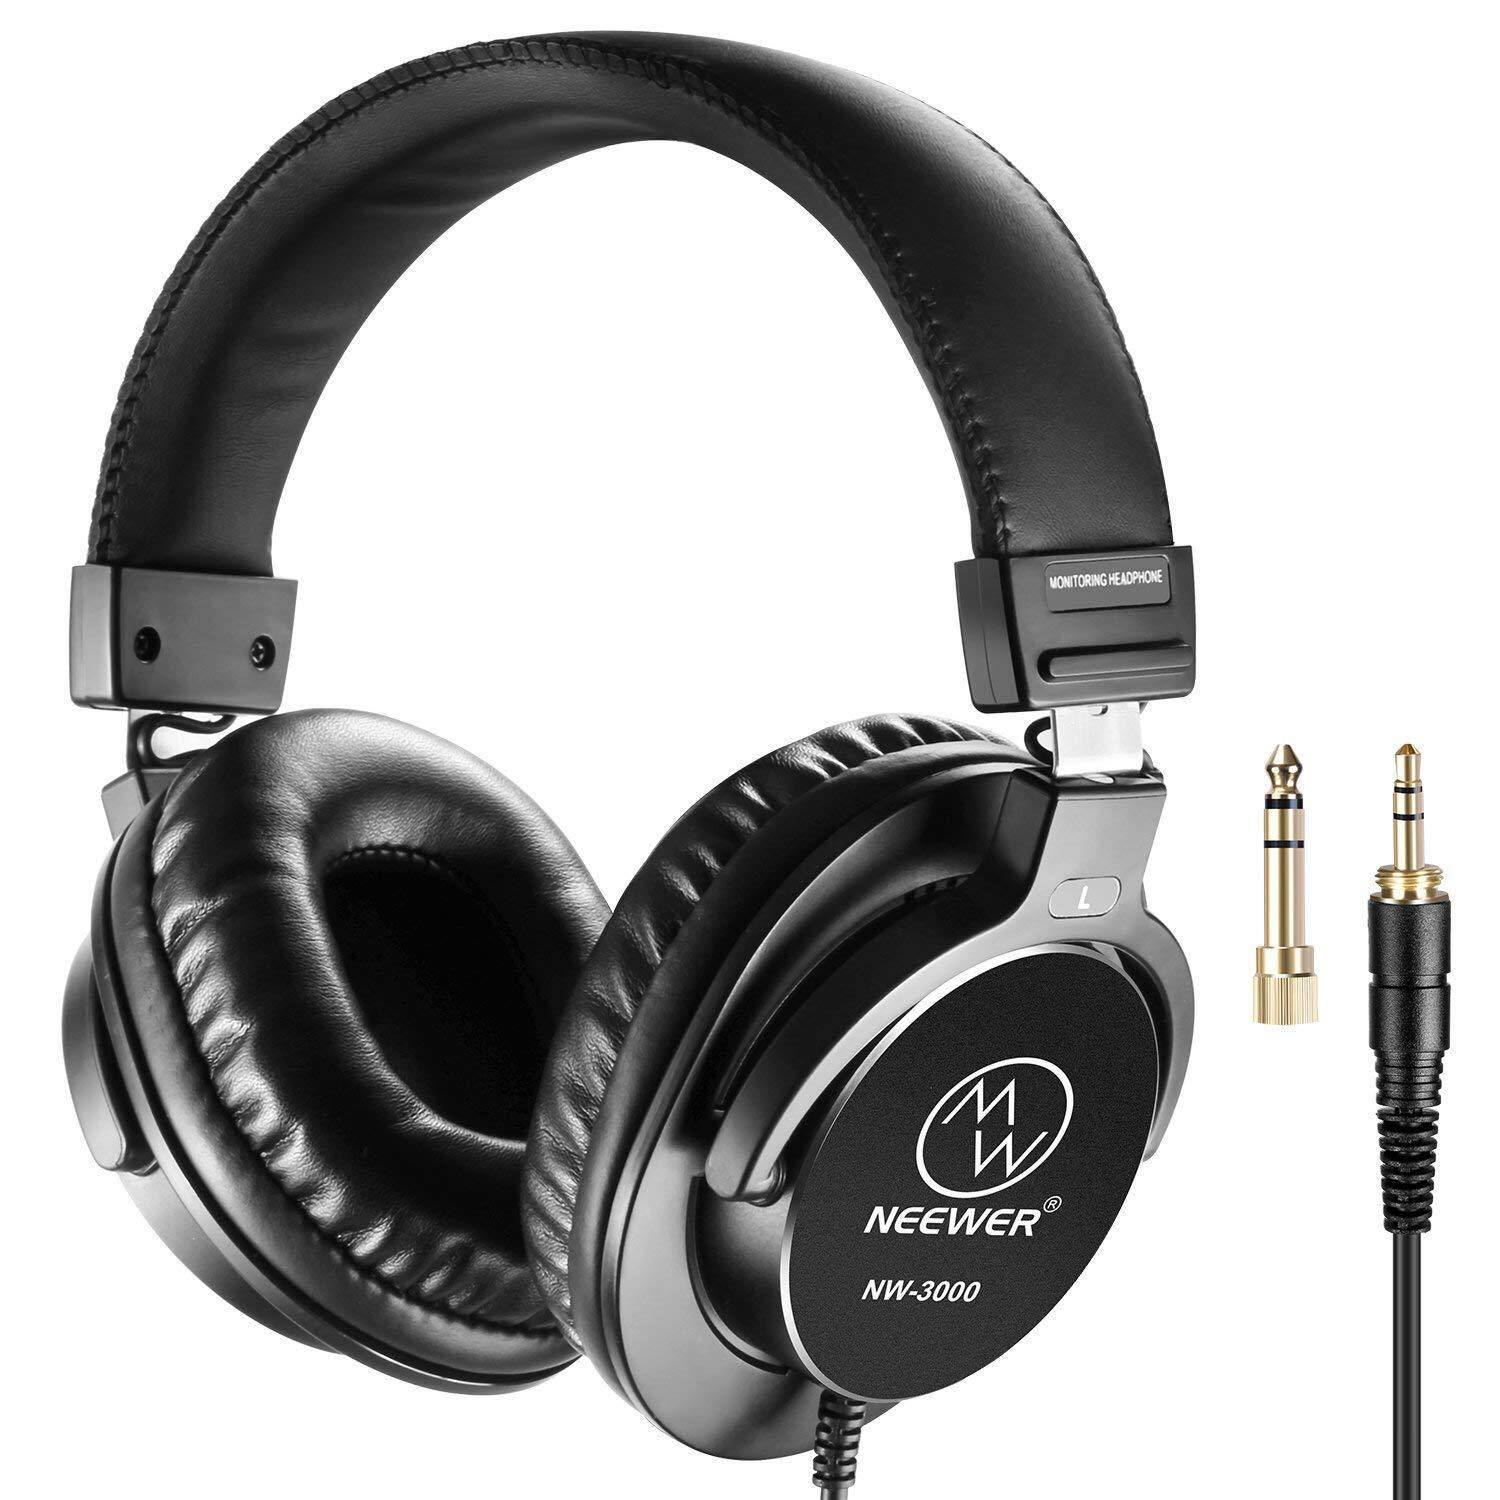 Neewer Studio Monitor Headphone-Dynamic Bisa Diputar Headset dengan 45 Mm Loudhailer Driver, 3 Meters Kabel, 6.35 Mm Steker Adaptor untuk Buah, Telepon Seluler, Televisi (NW-3000)